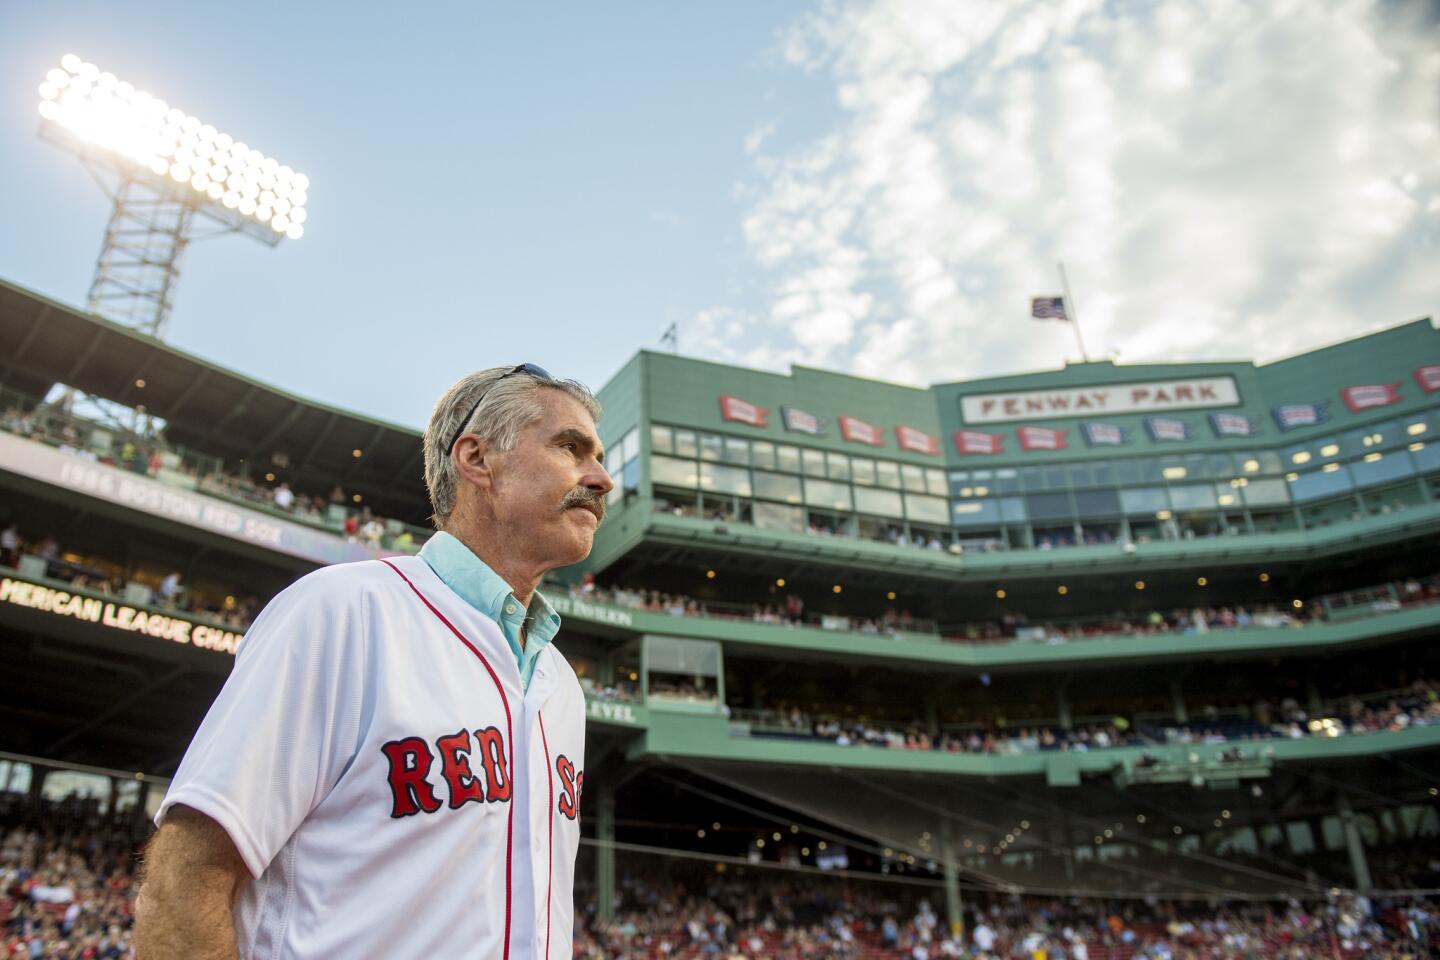 Boston's left field legacy is stuff of legend